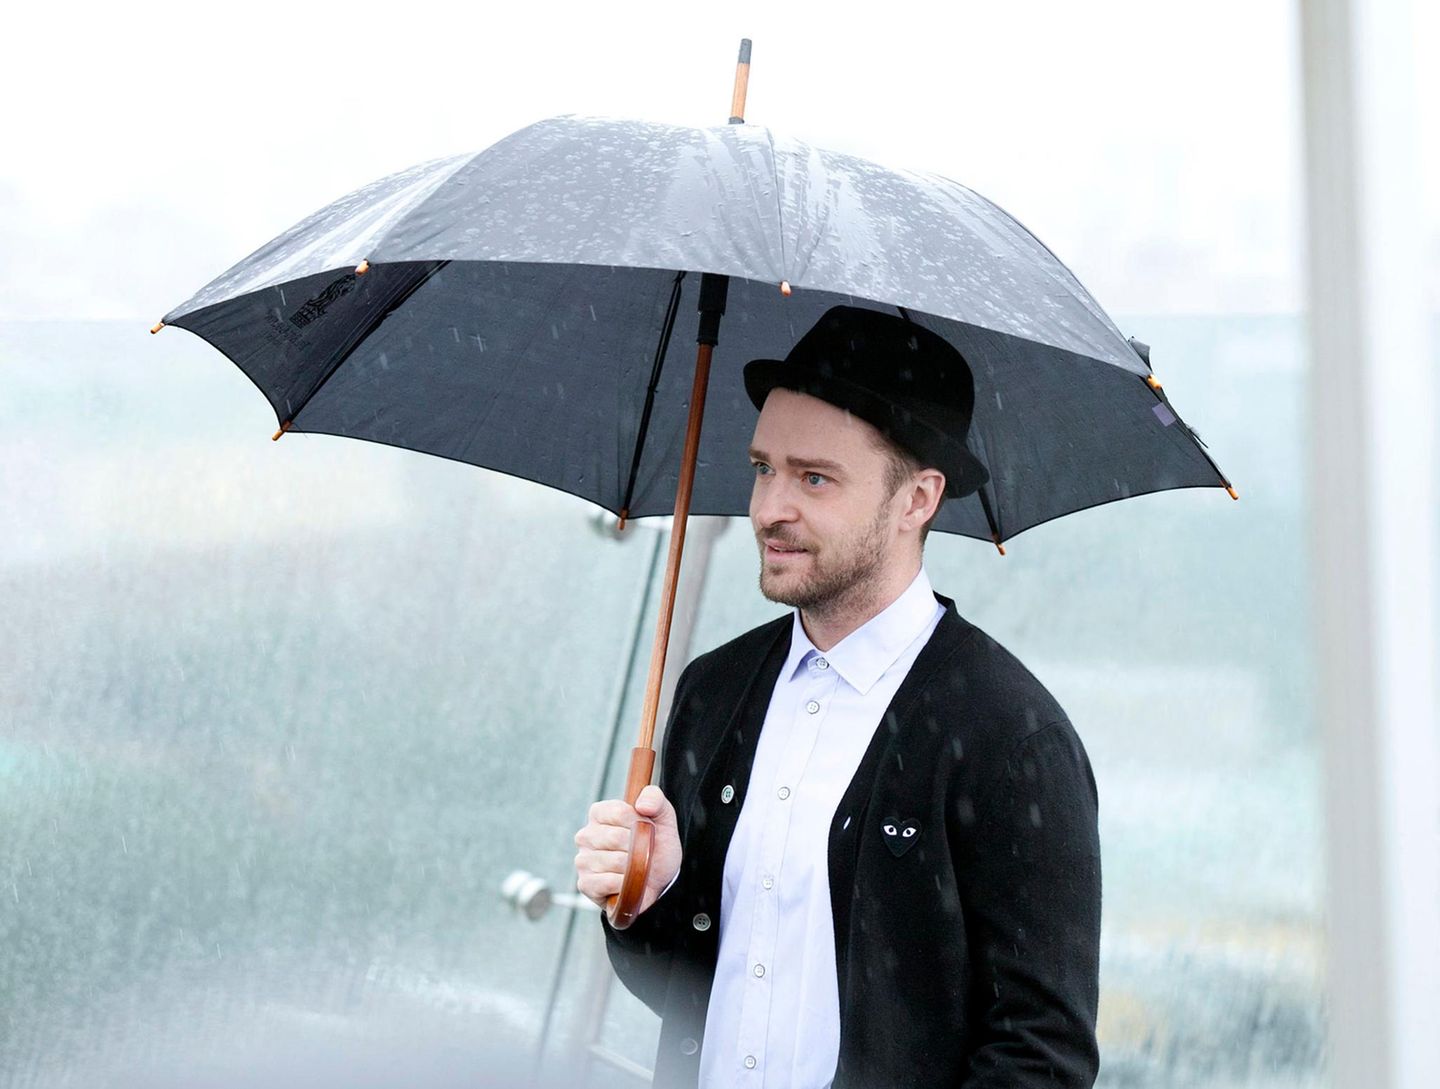 Bei einem Fototermin in Moskau will das Wetter nicht so recht mitspielen. Justin Timberlake versucht trotzdem zu lächeln.